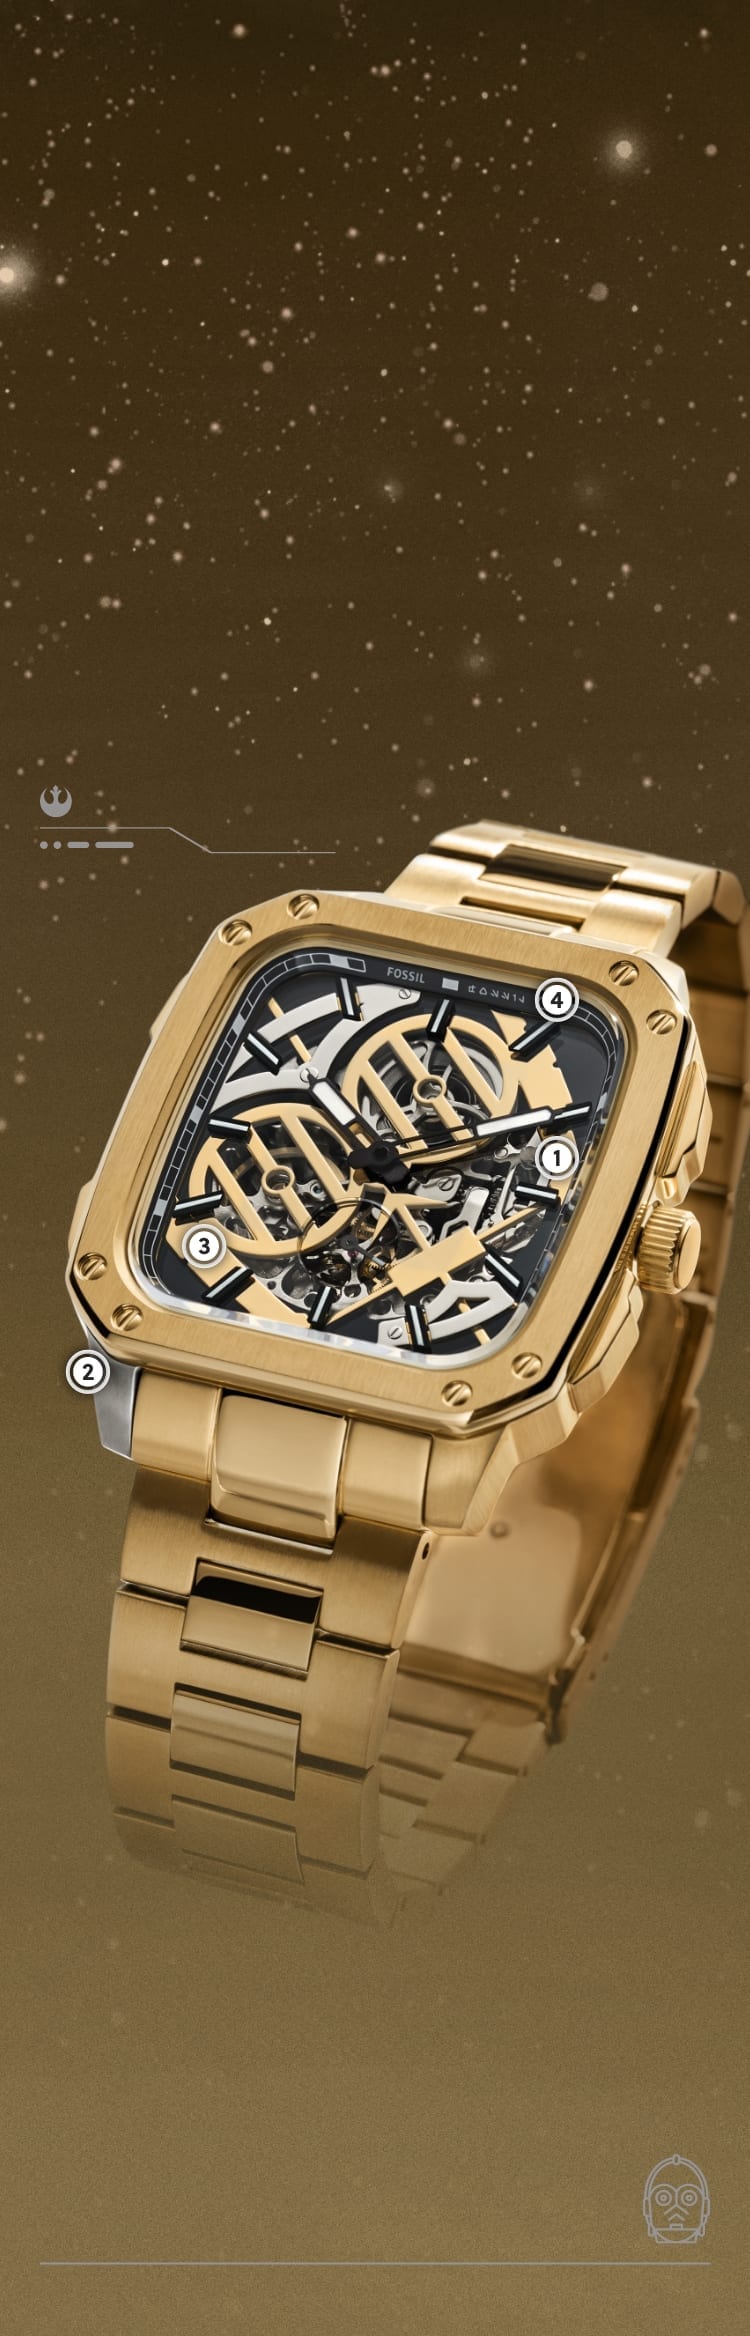 Un gros plan d’une montre dorée avec le visage de C-3PO, doré lui aussi, sur son mouvement automatique exposé